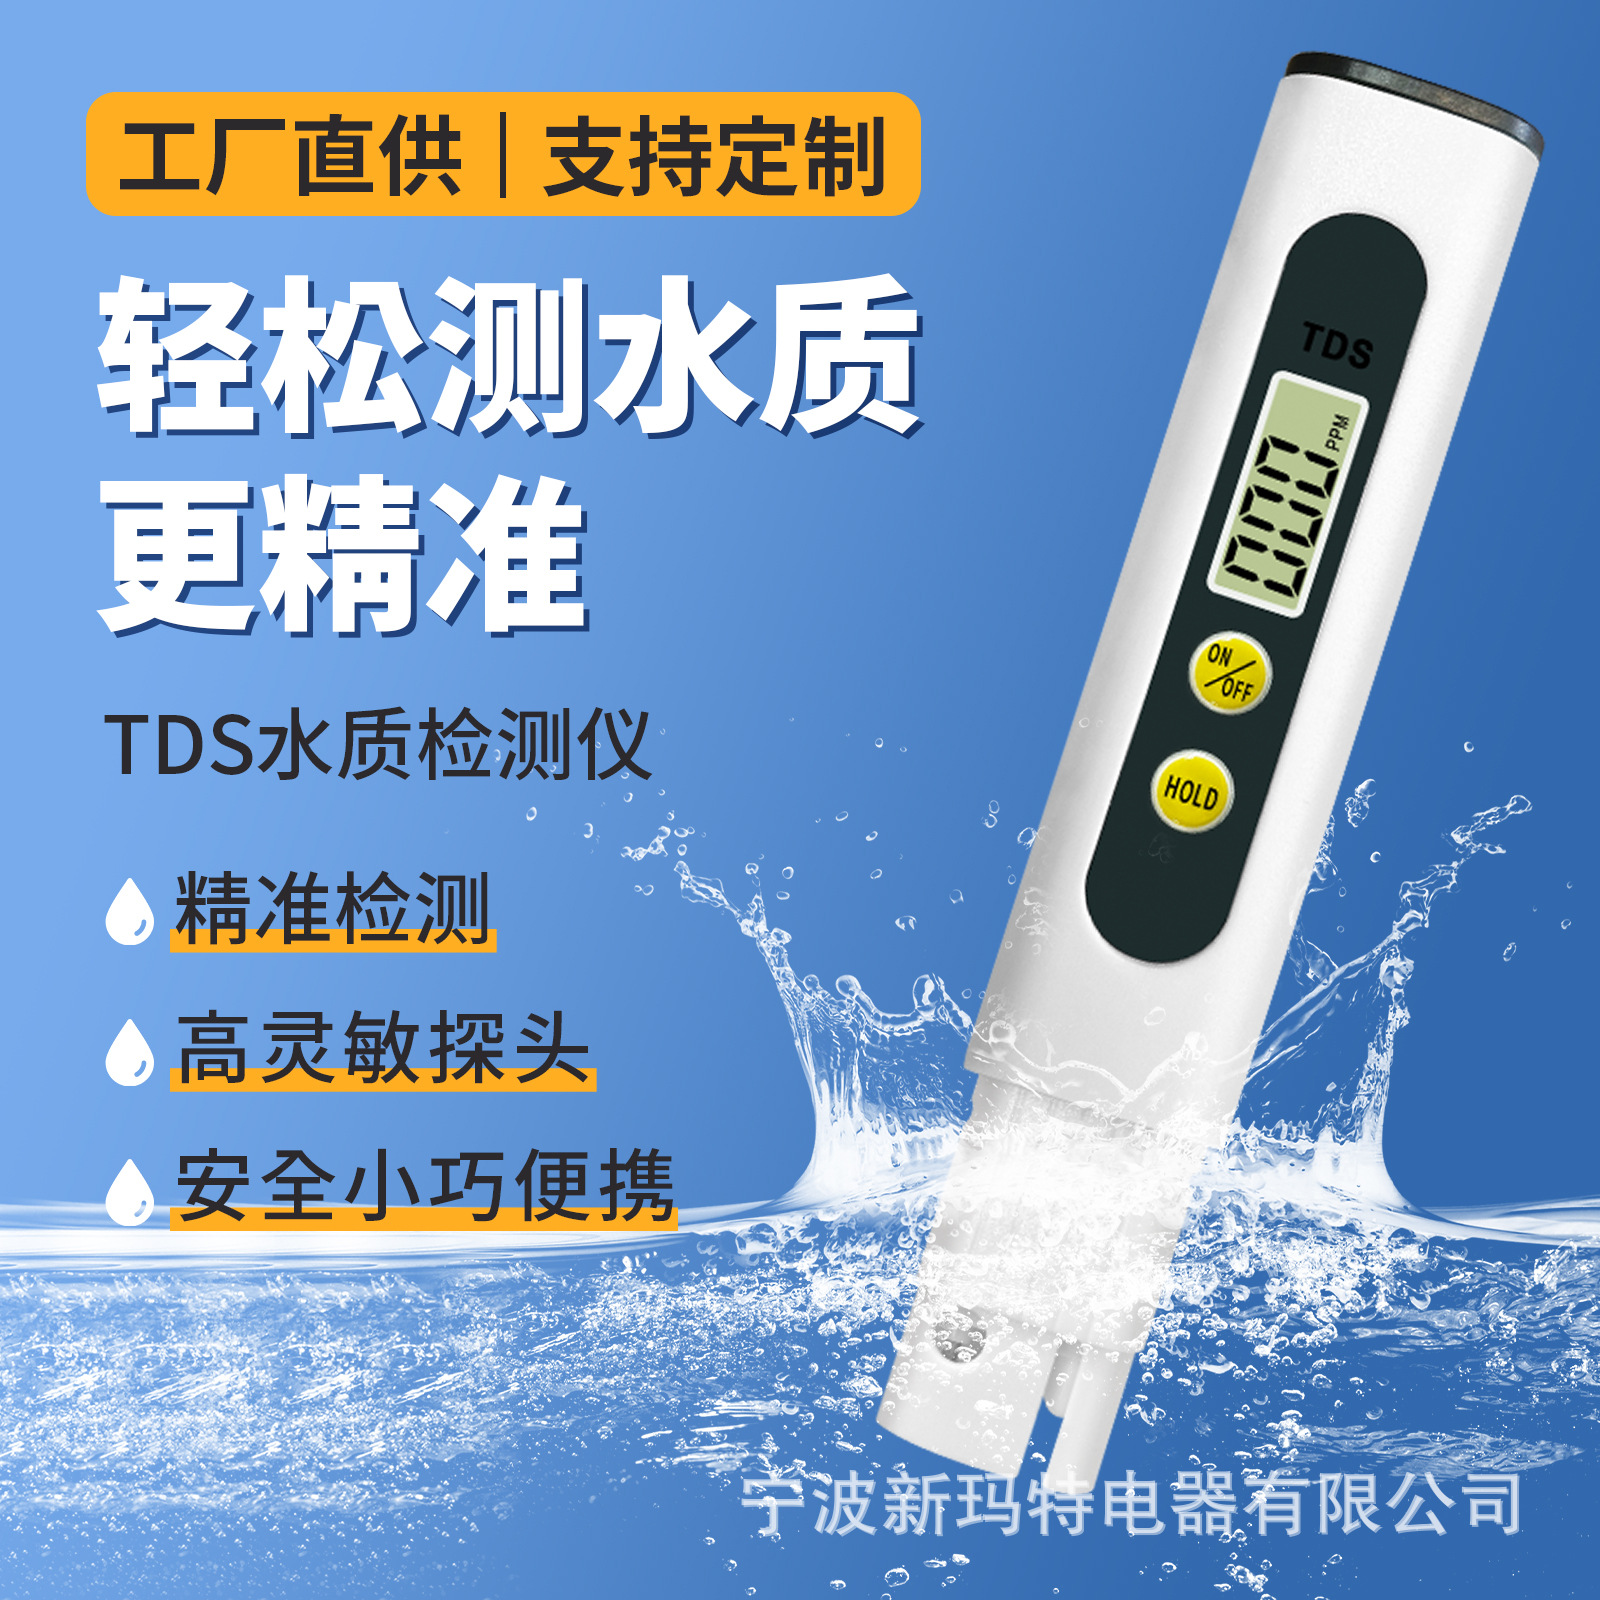 定制tds笔测试笔小批量柔性测水笔加印logo外贸品质tds水质检测笔